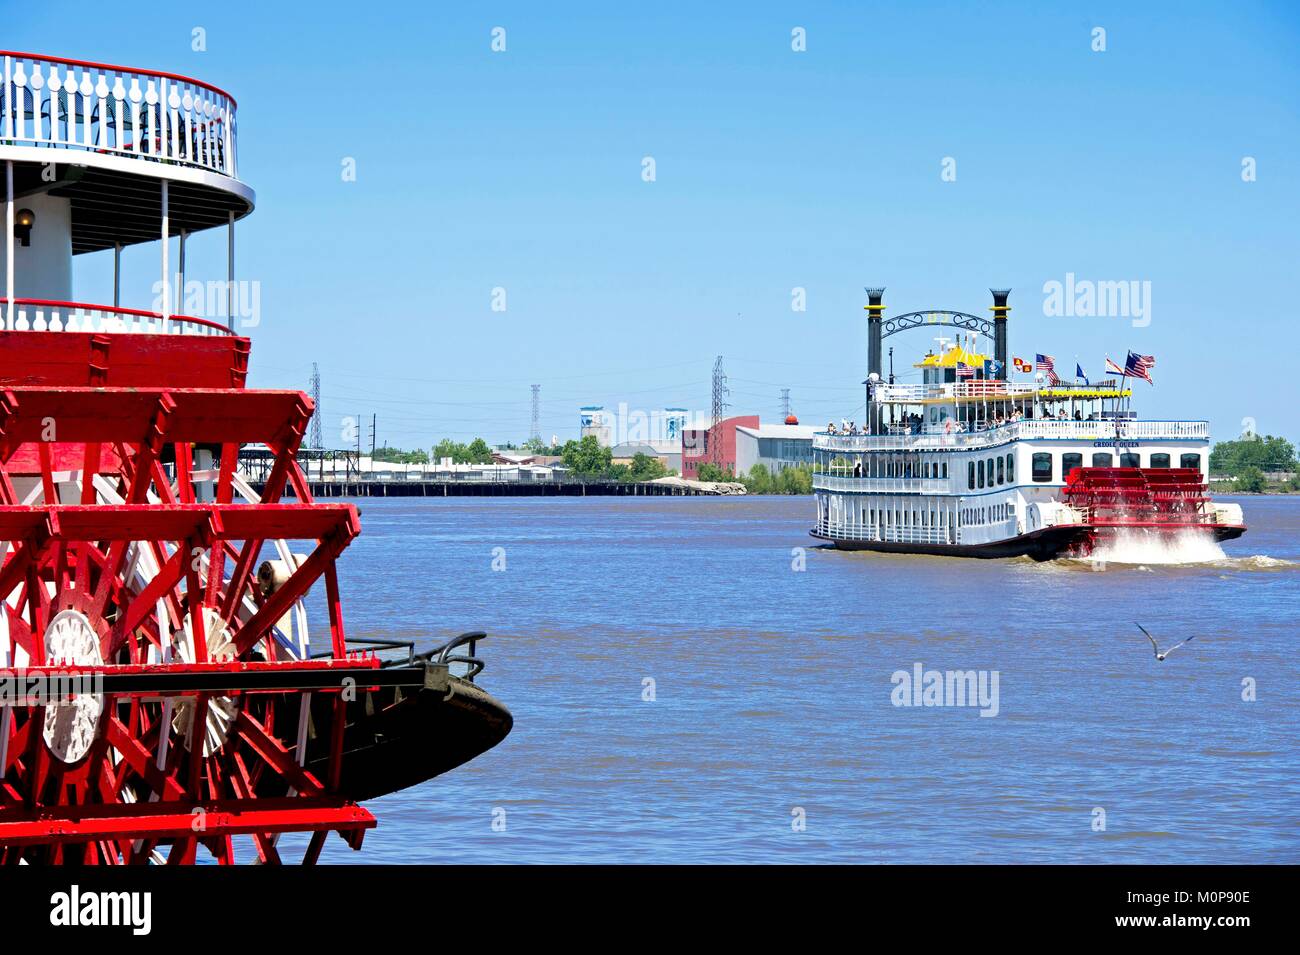 États-unis, Louisiane, Nouvelle Orléans, le steamboat Natchez sur le fleuve Mississippi Banque D'Images